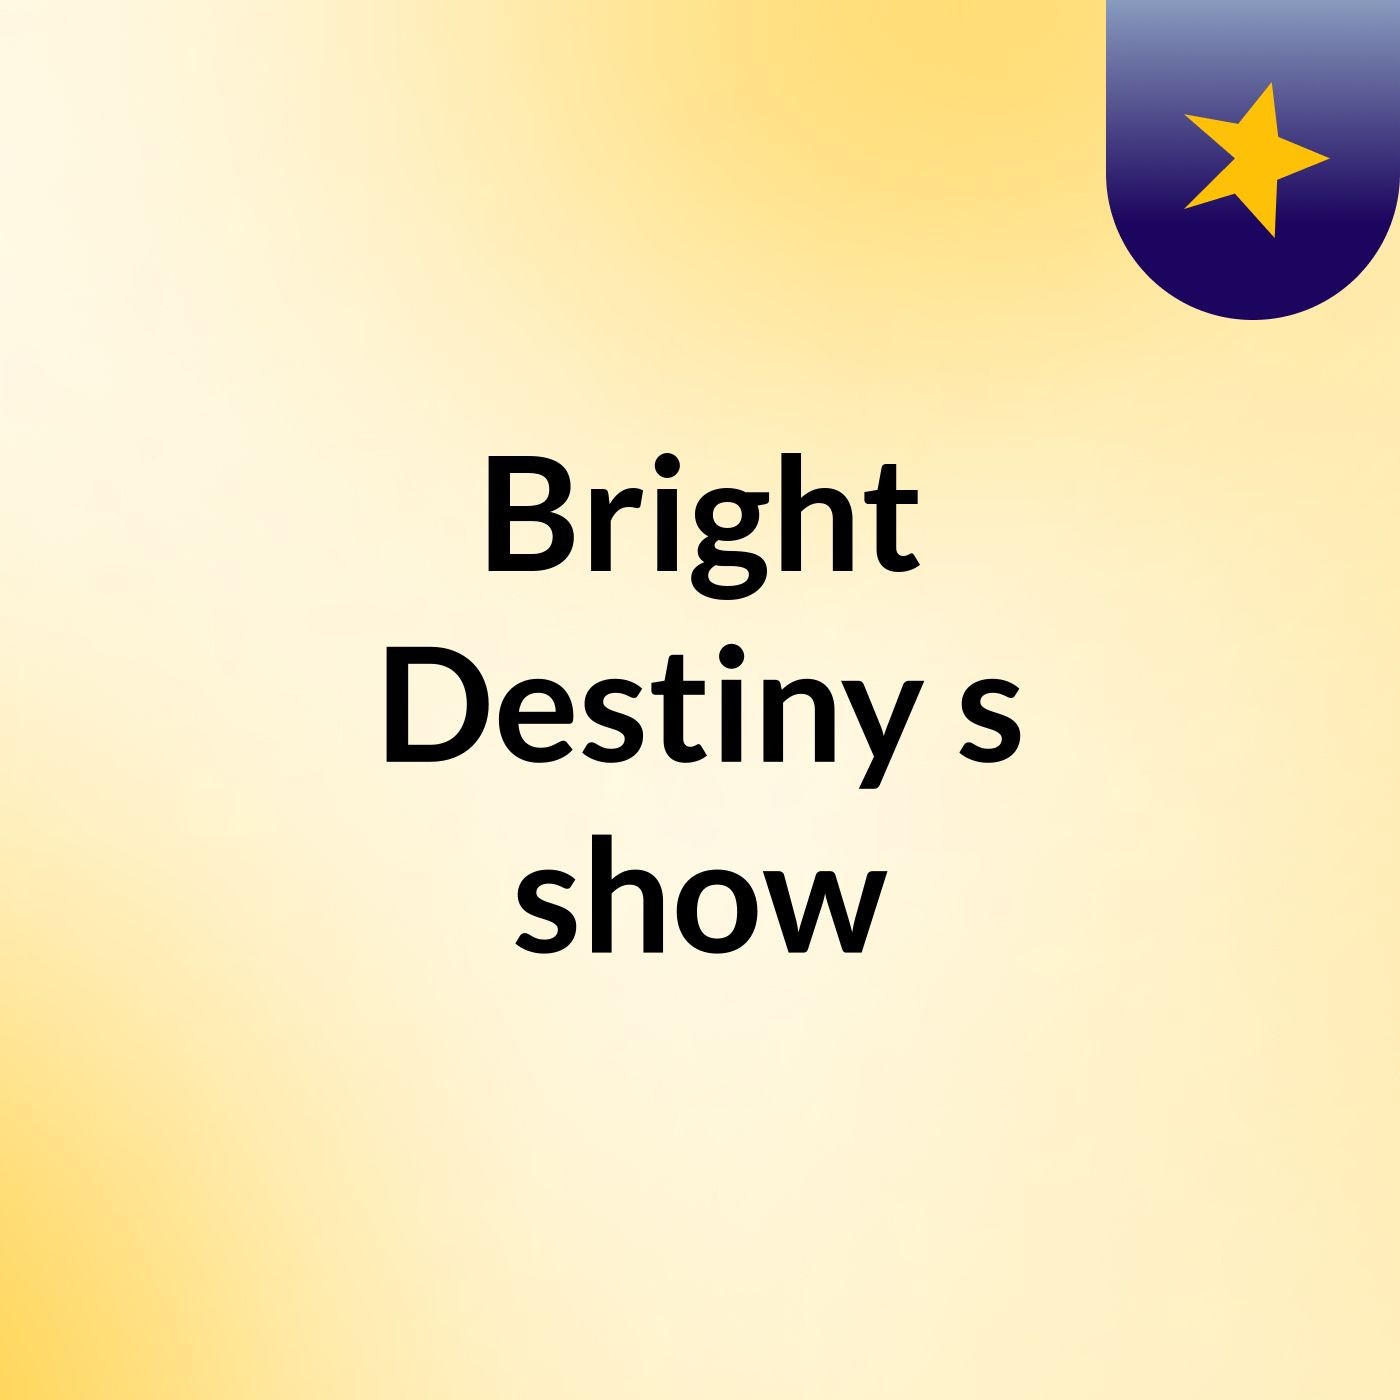 Episode 2 - Bright Destiny's show